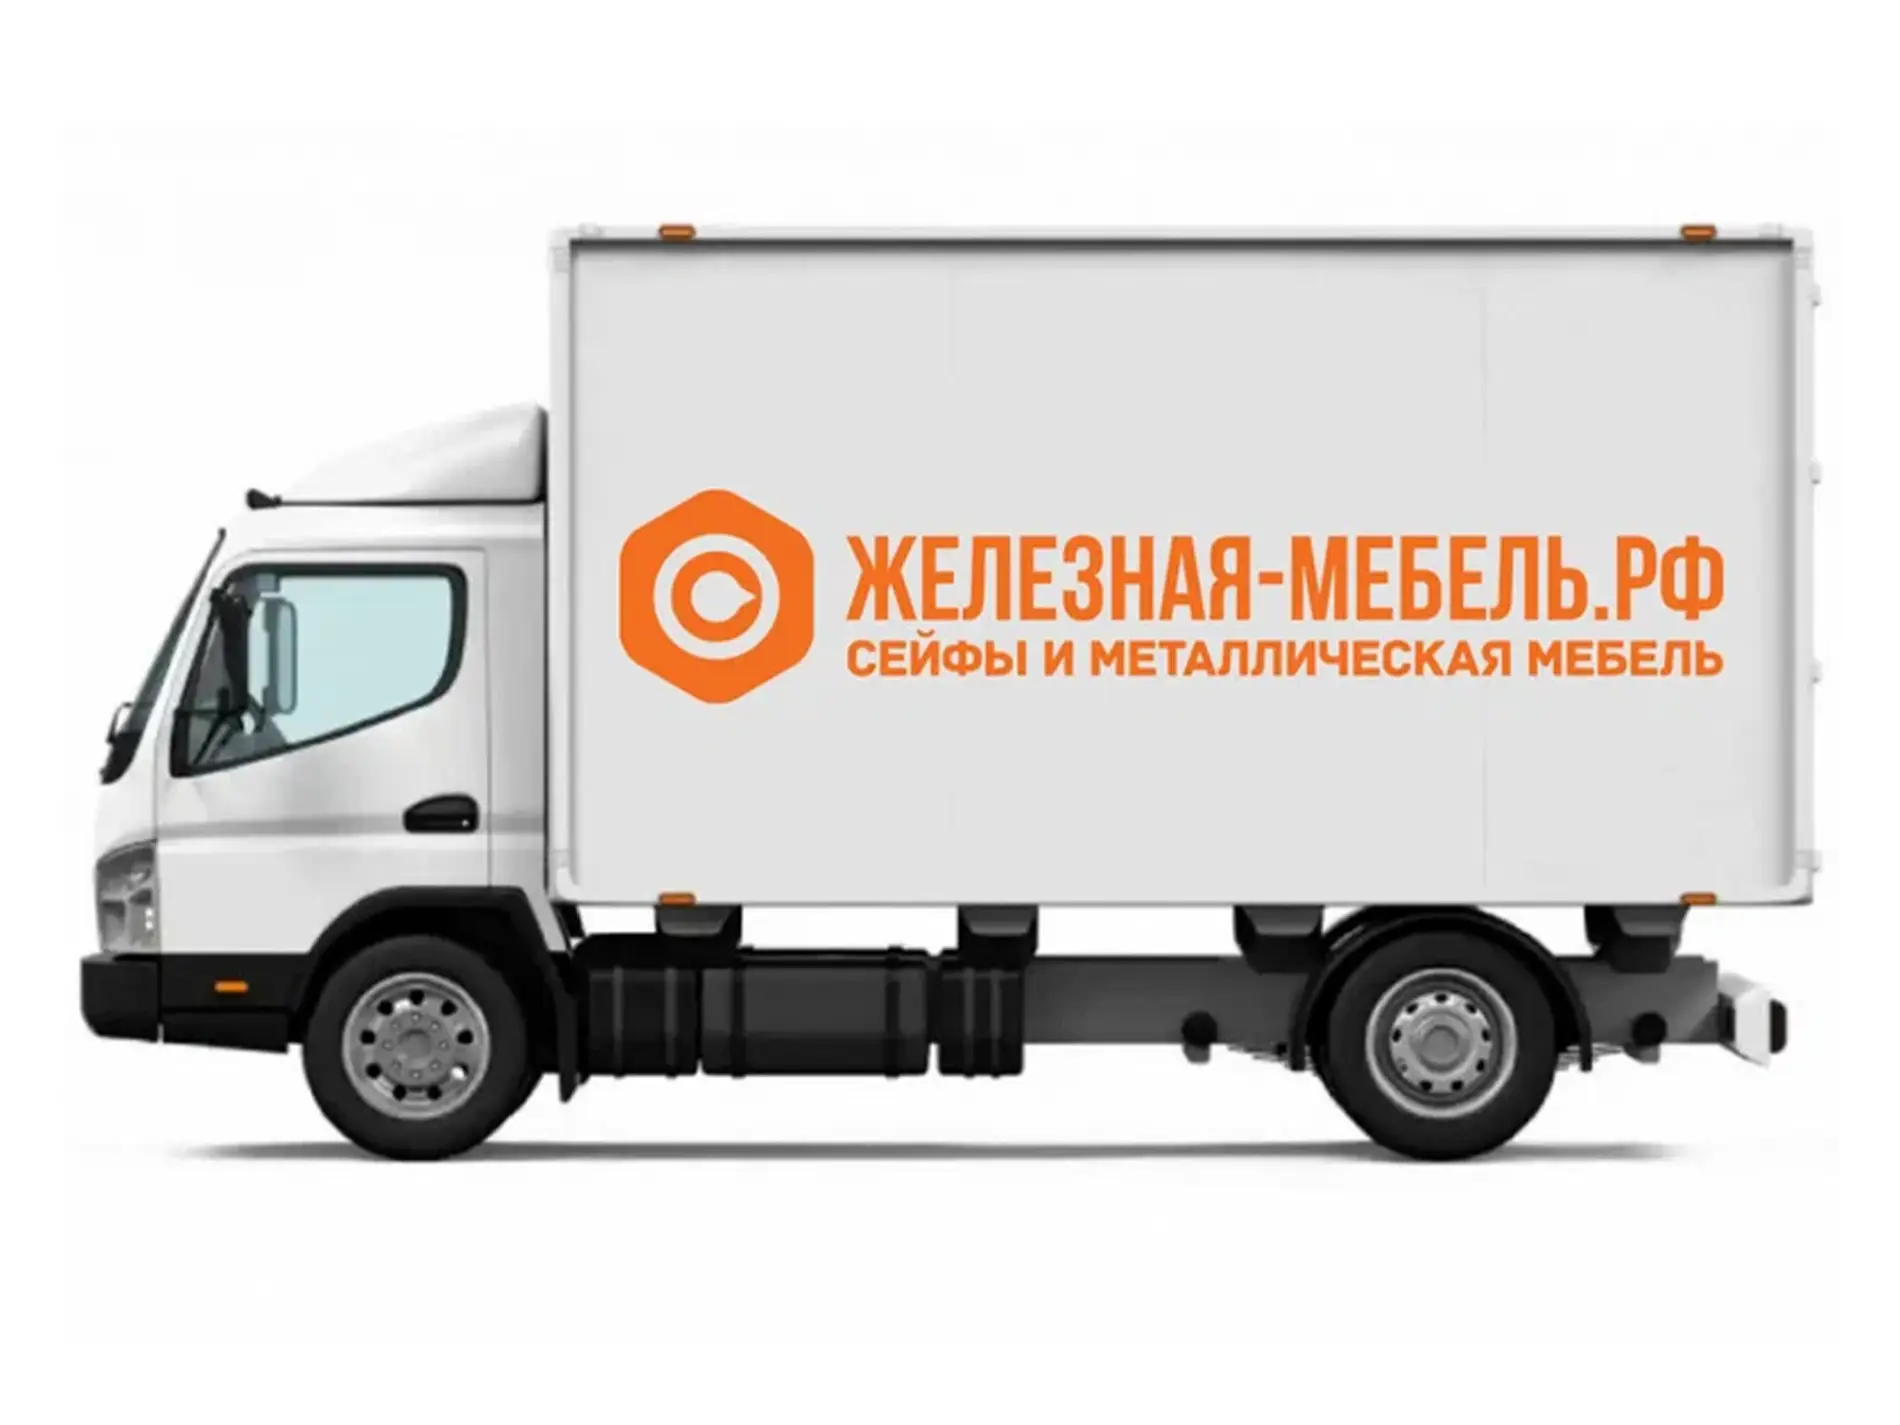 Введены особые условия доставки в Нижнем Новгороде на нейтральное оборудование, тележки и оборудование для склада